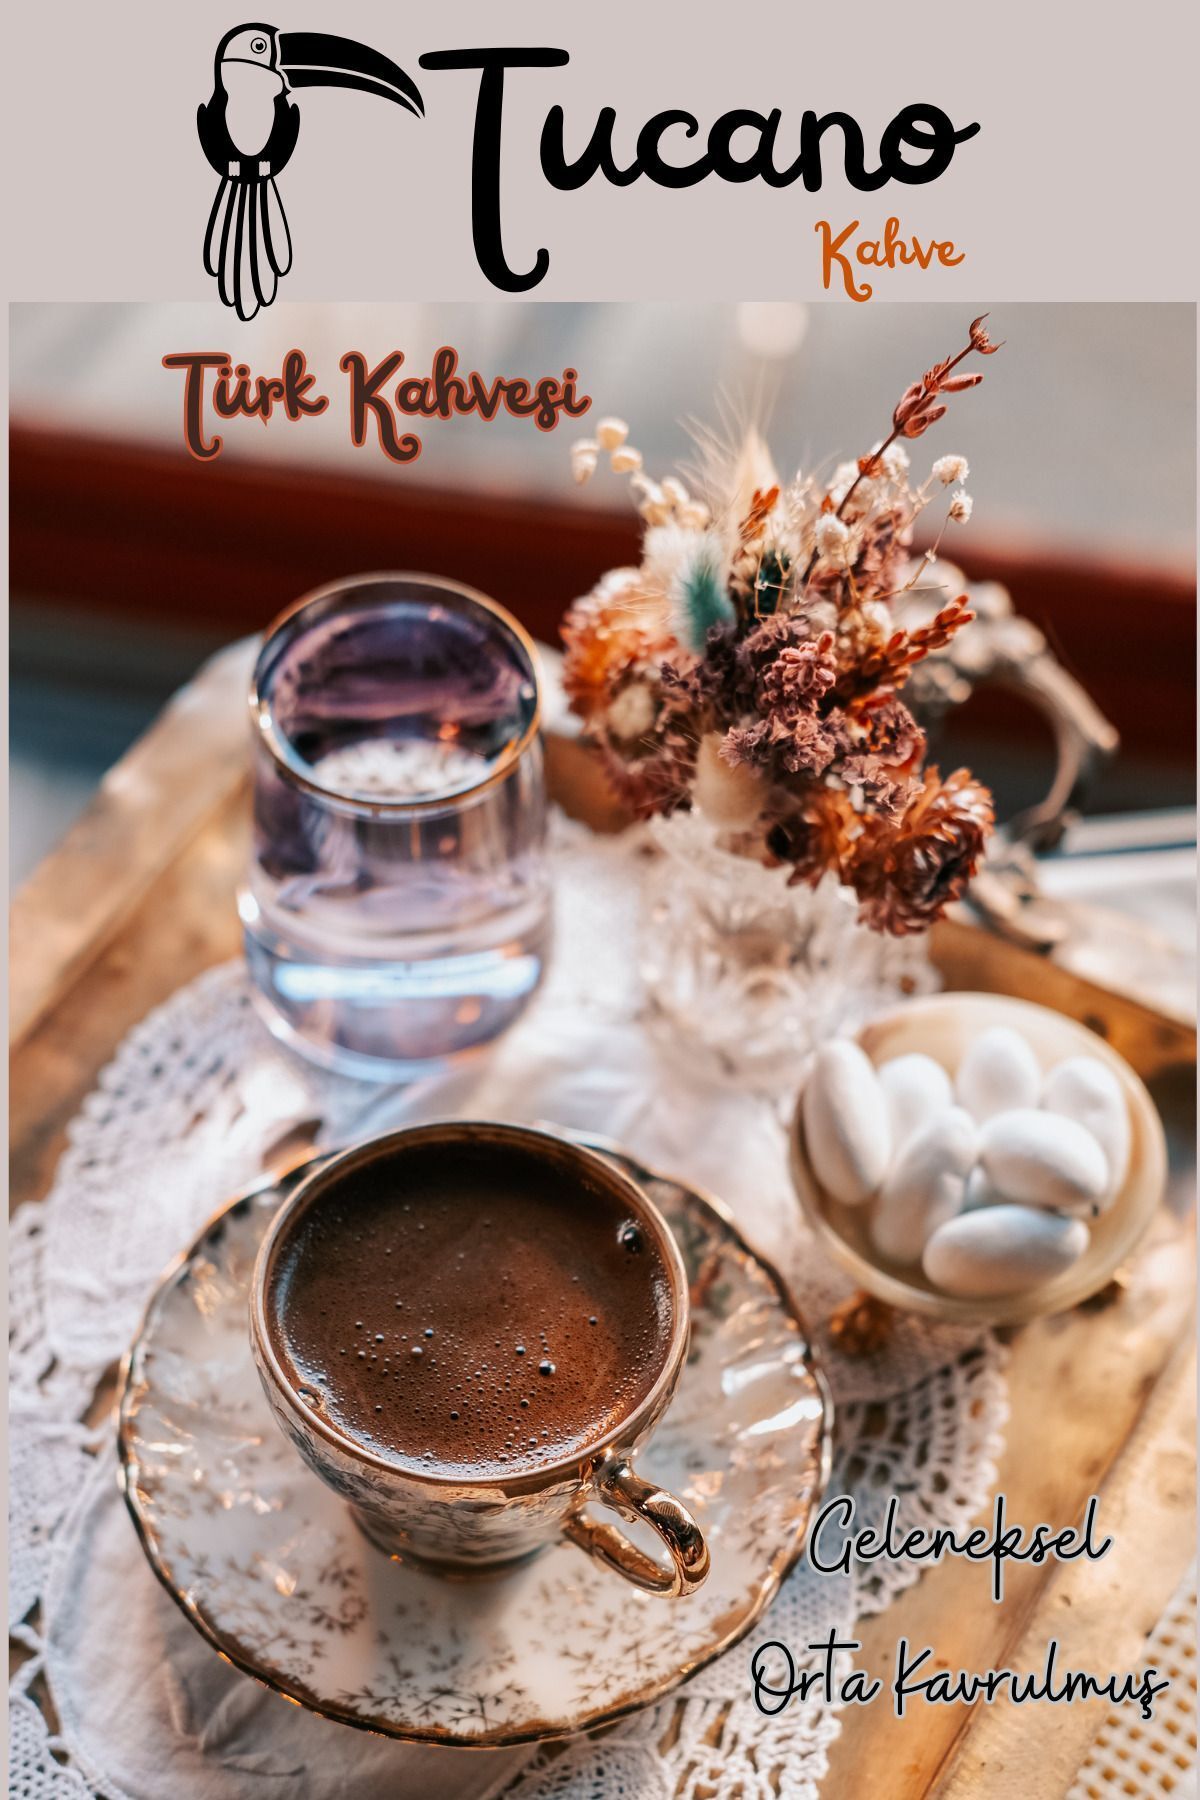 Tucano Türk Kahvesi ( Geleneksel- Orta Kavrulmuş ) 1000 gr.